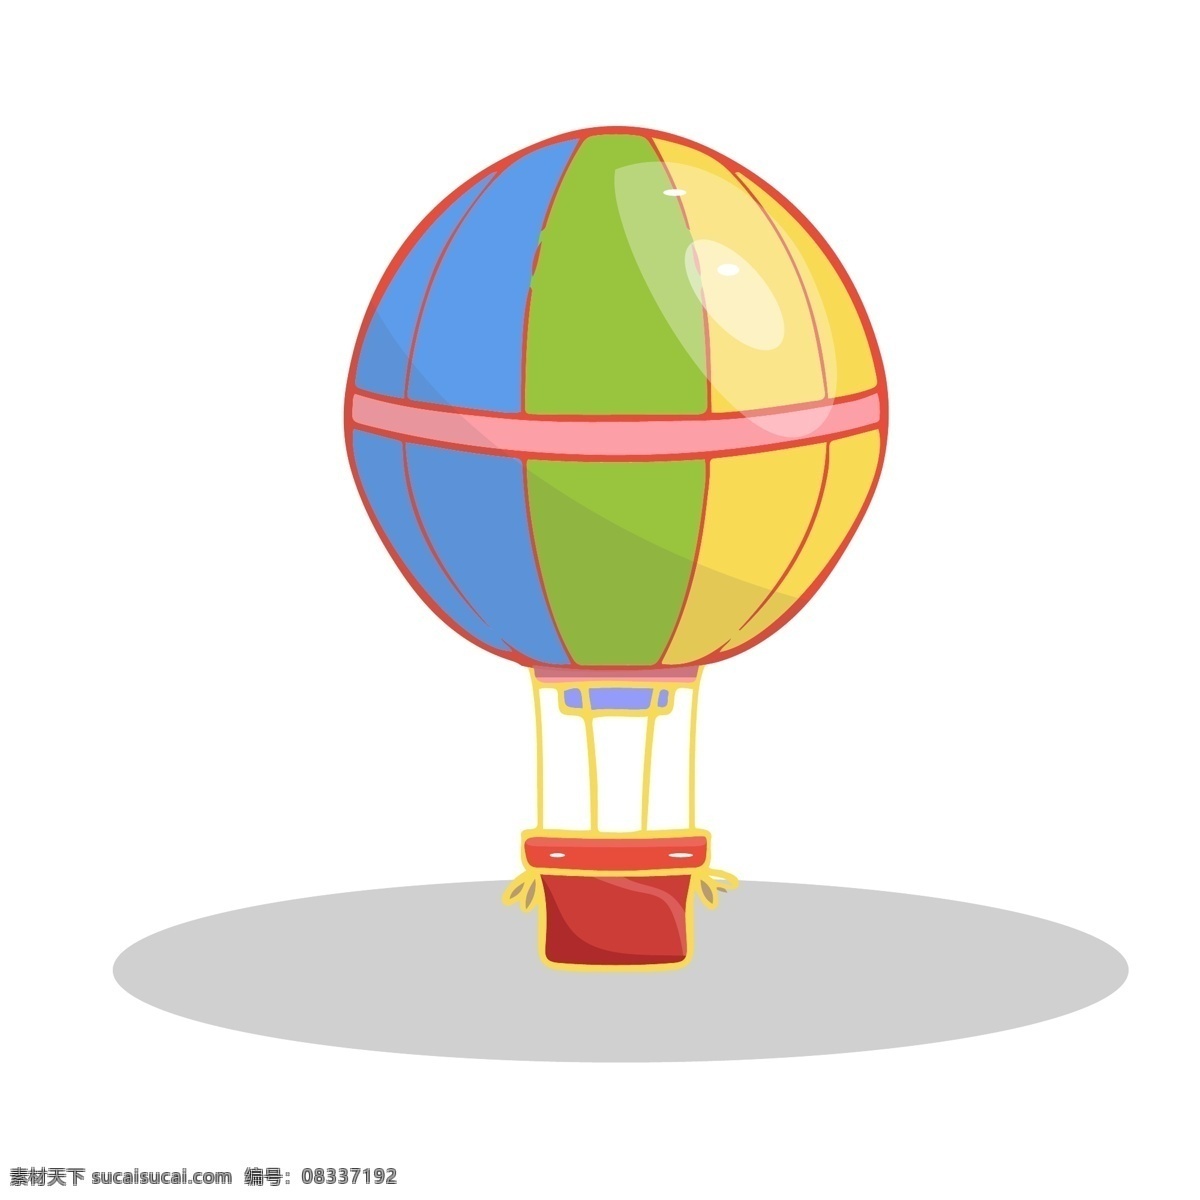 卡通 彩色 热气球 插画 卡通热气球 氢气球 手绘氢气球 夏日 夏季 坐气球度假 漂亮的气球